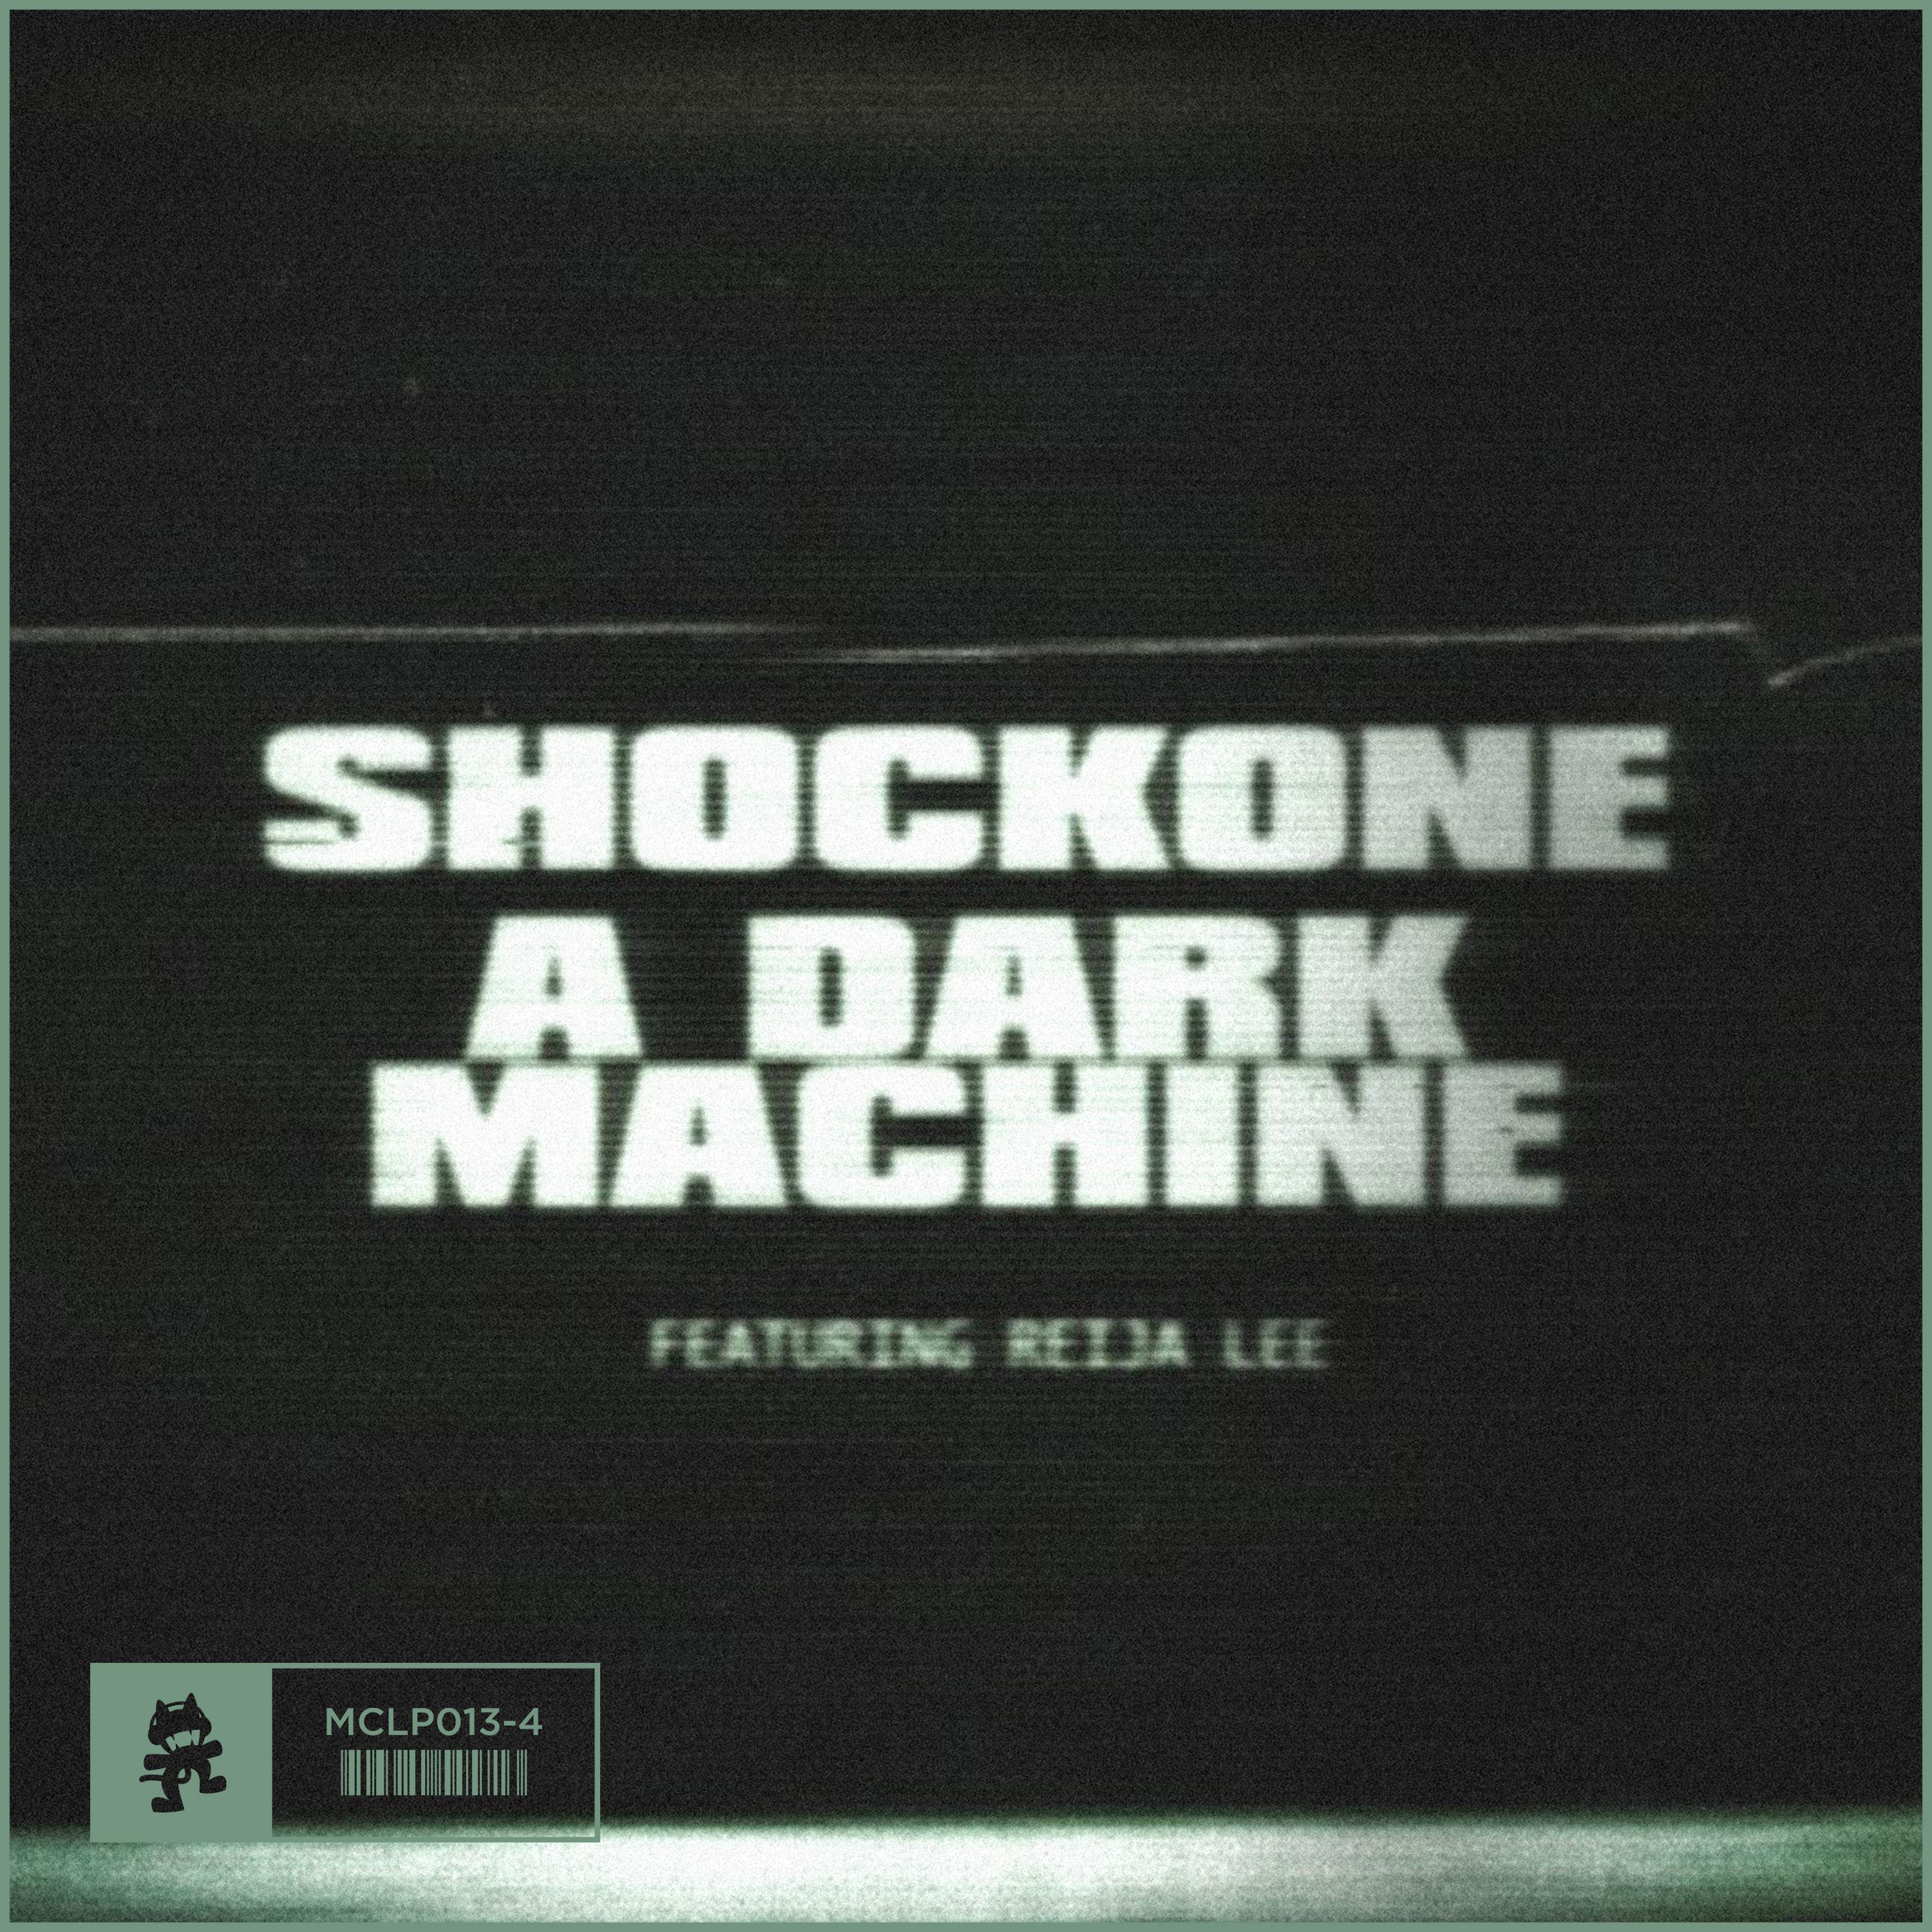 A Dark Machine